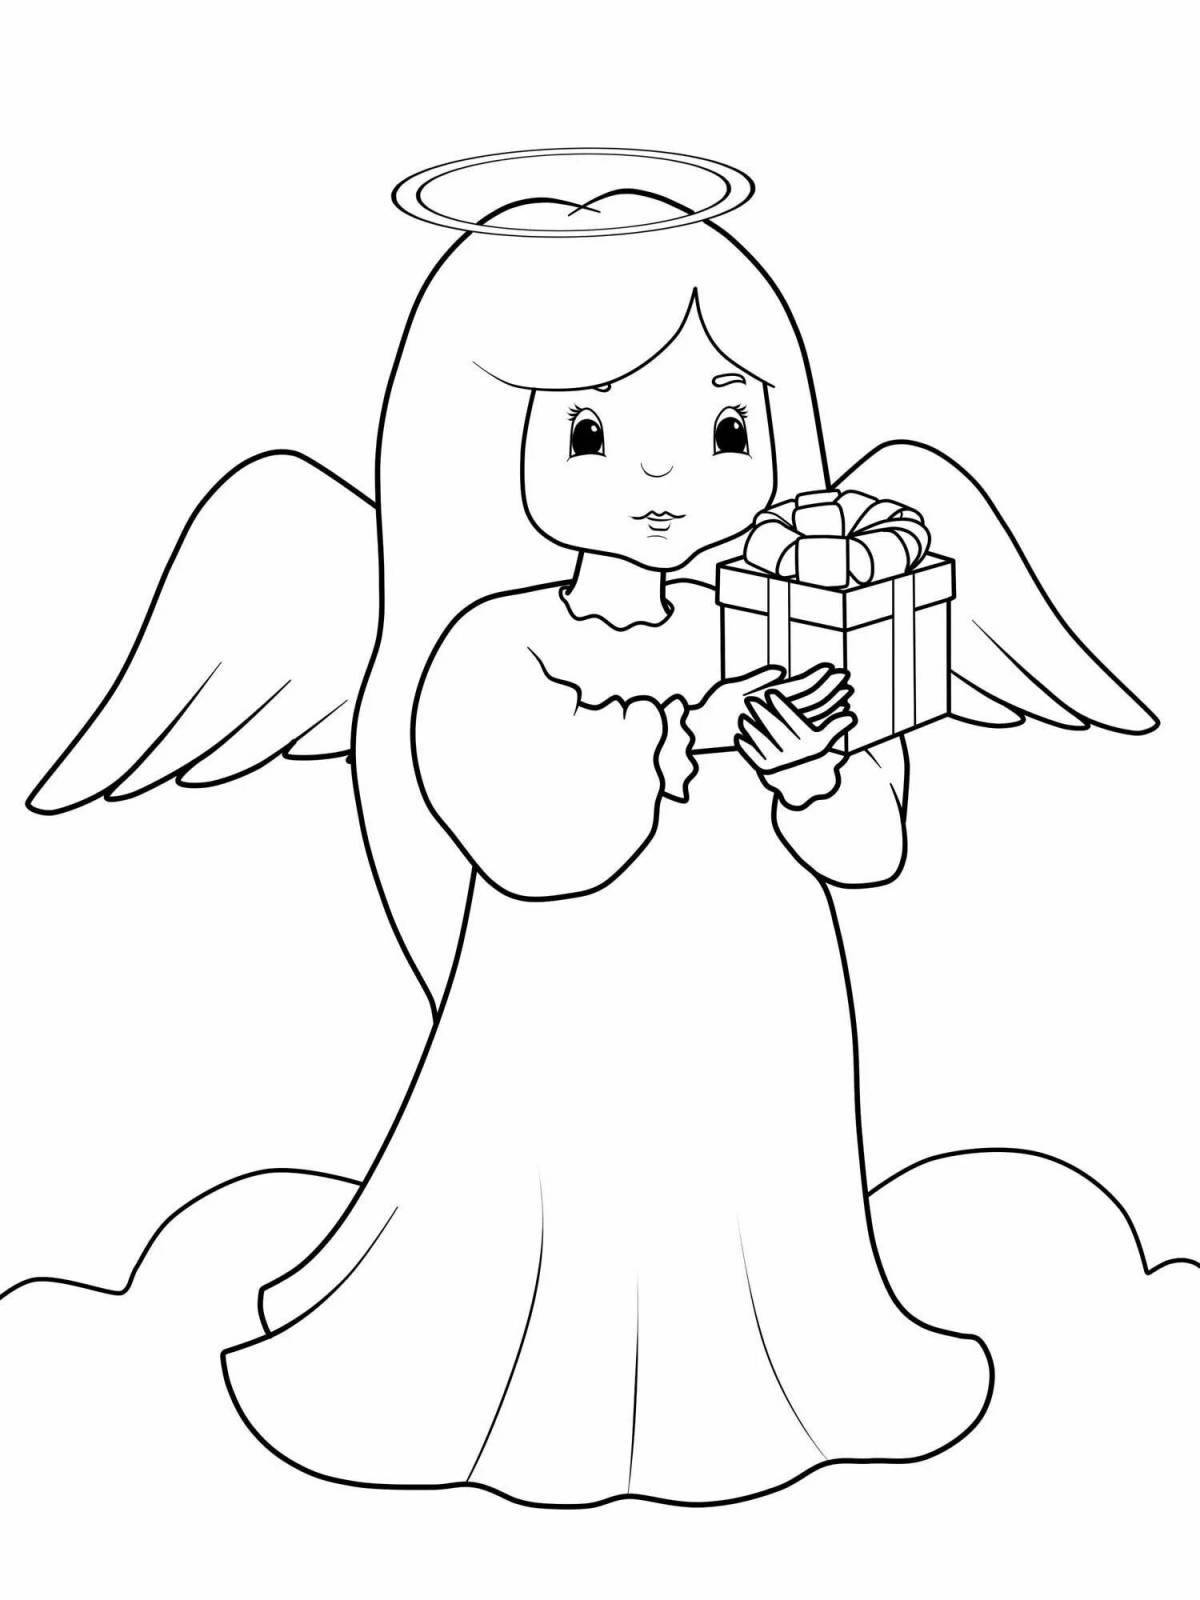 Радостный ангелочек-раскраска для детей 3-4 лет